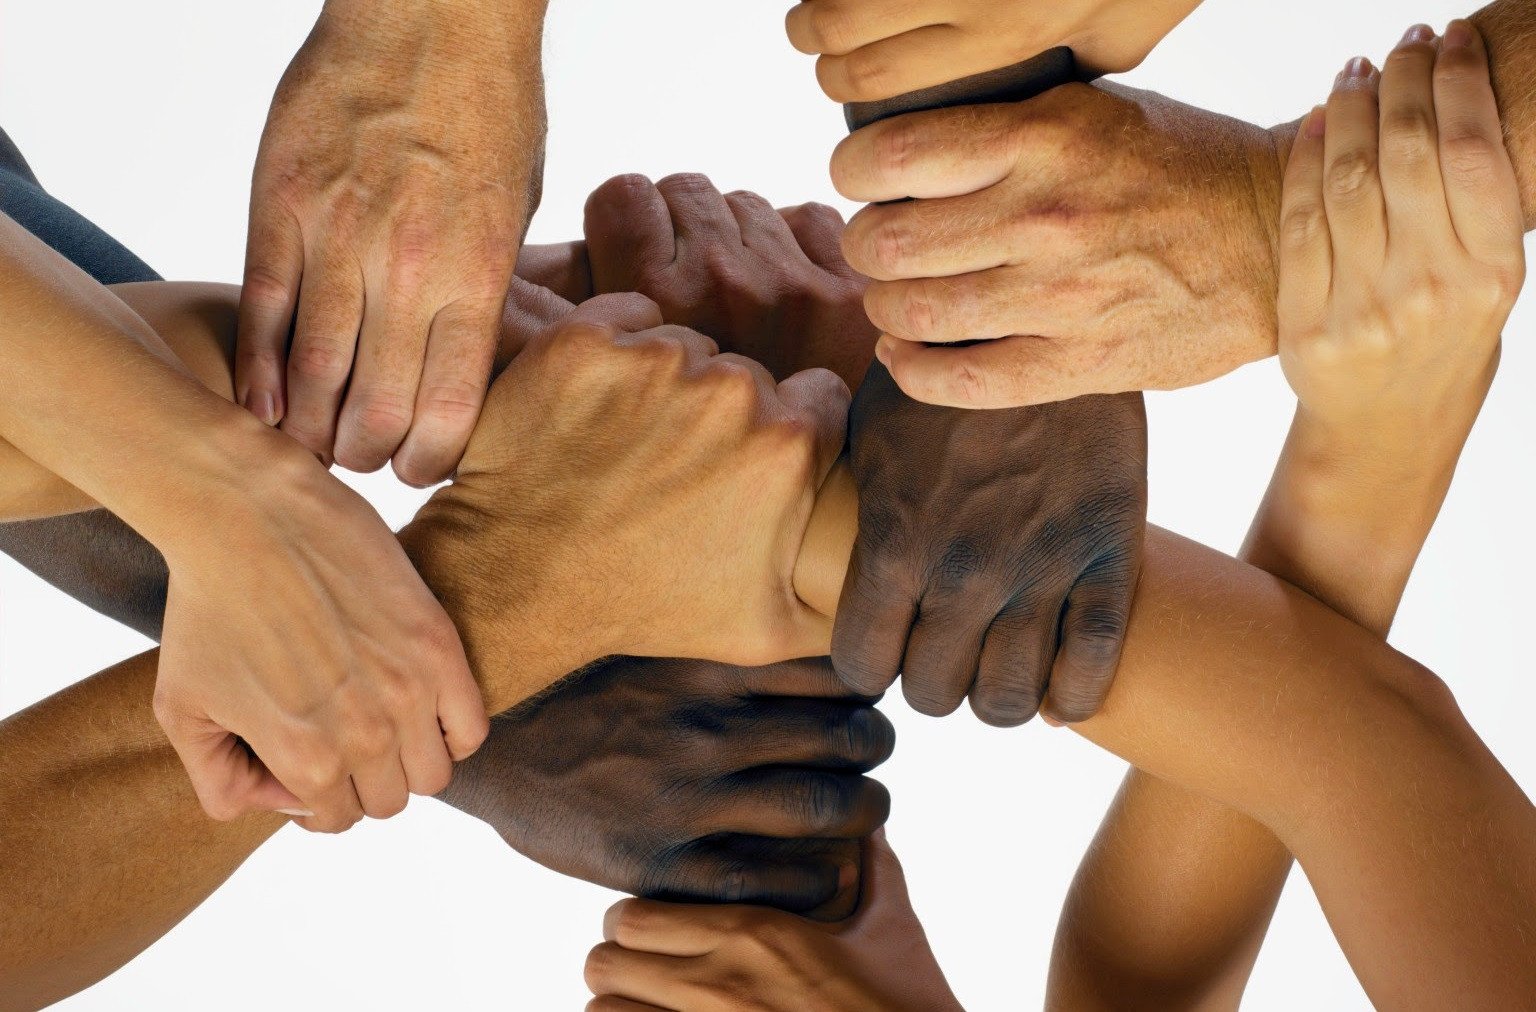 Расы людей равны. Единство людей. Равенство между людьми. Много рук. Руки людей разных рас.